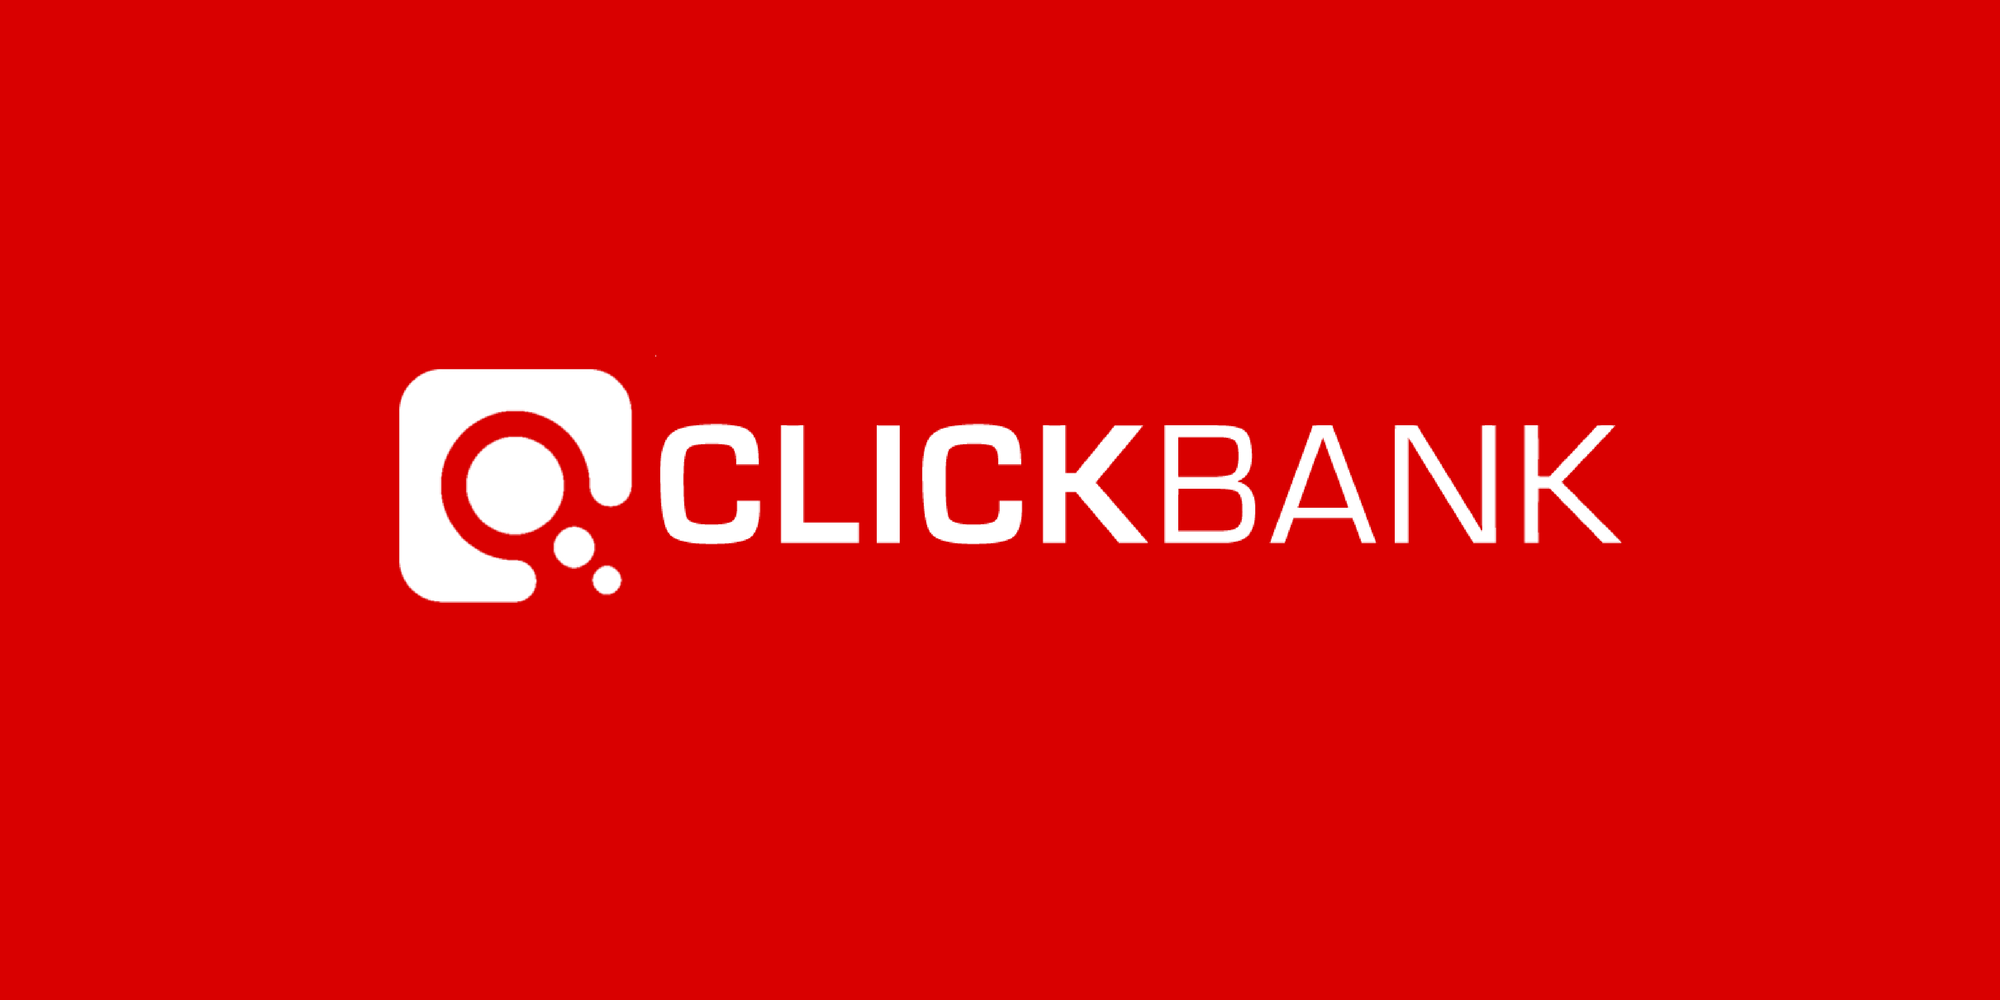 Click банк. Clickbank. Клик банк. Clickbank logo.